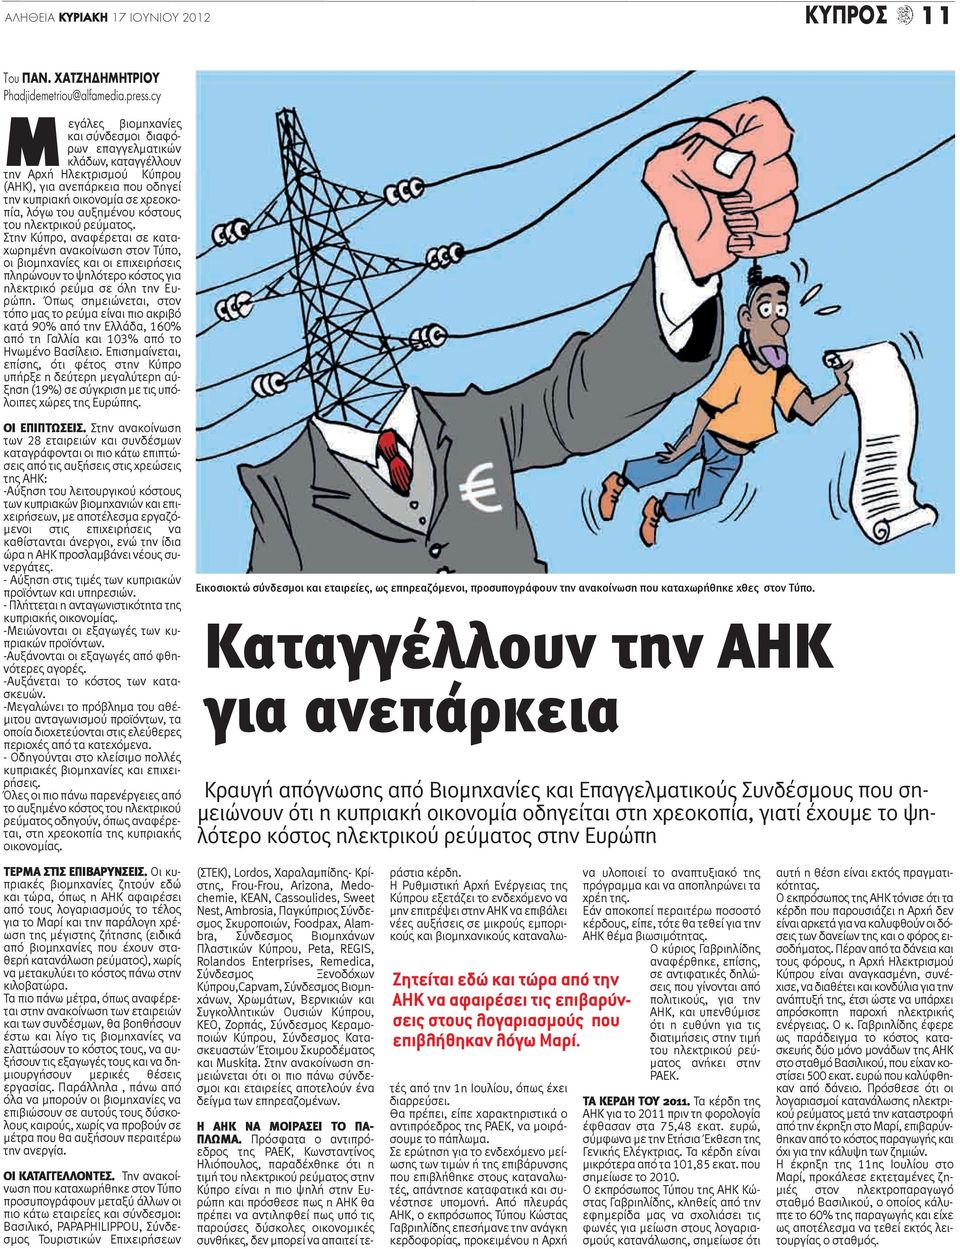 κόστους του ηλεκτρικού ρεύματος. Στην Κύπρο, αναφέρεται σε καταχωρημένη ανακοίνωση στον Τύπο, οι βιομηχανίες και οι επιχειρήσεις πληρώνουν το ψηλότερο κόστος για ηλεκτρικό ρεύμα σε όλη την Ευρώπη.